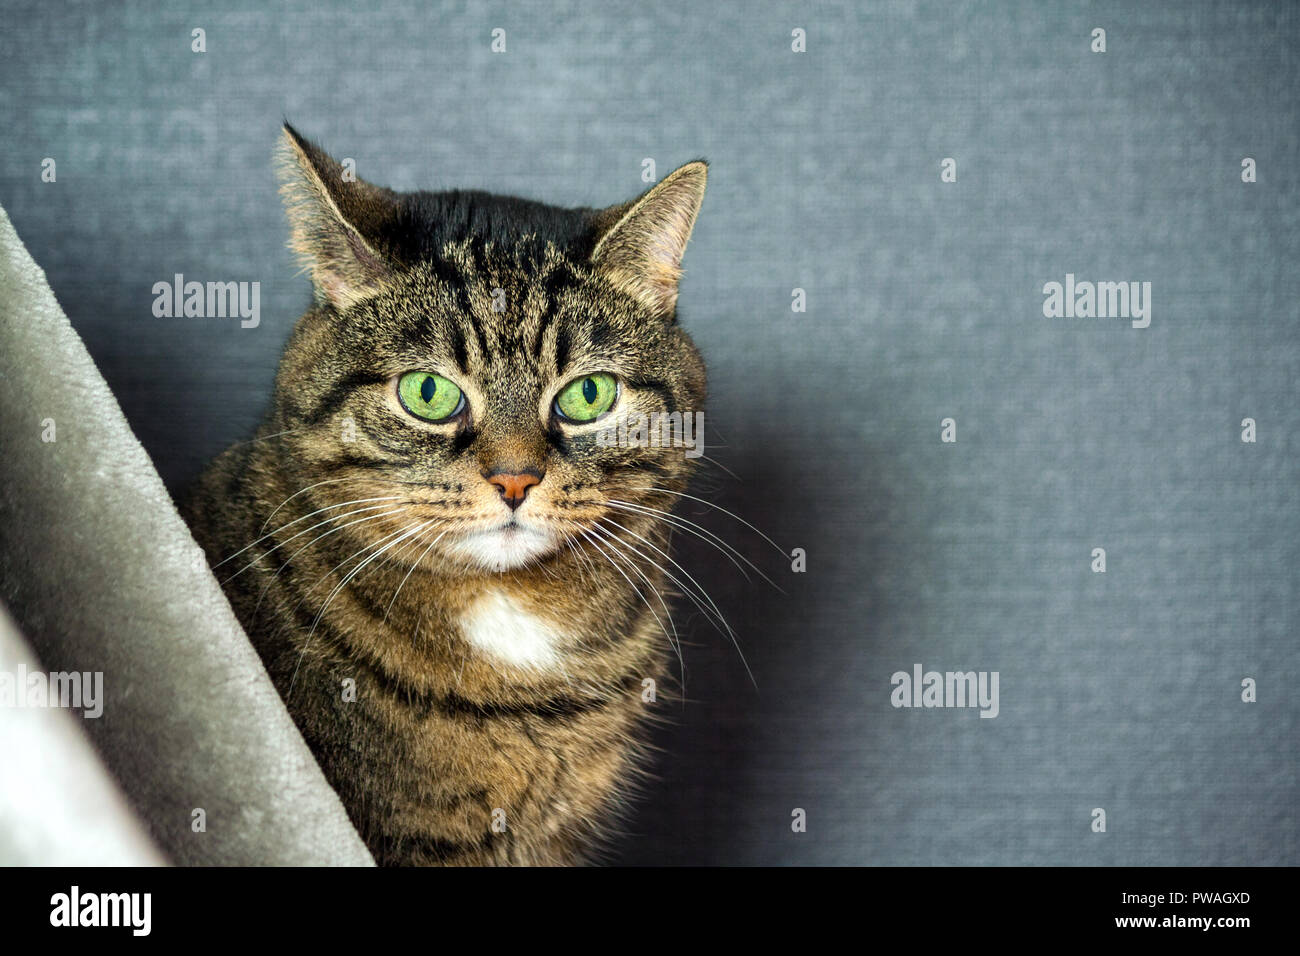 Mongrel gestreifte Katze, Fett Backen, Nahaufnahme Portrait, sitzt hinter einem grauen Schleier, im Hintergrund einen dunkelblauen Hintergrund, riesige grüne schrägen Augen, Stockfoto